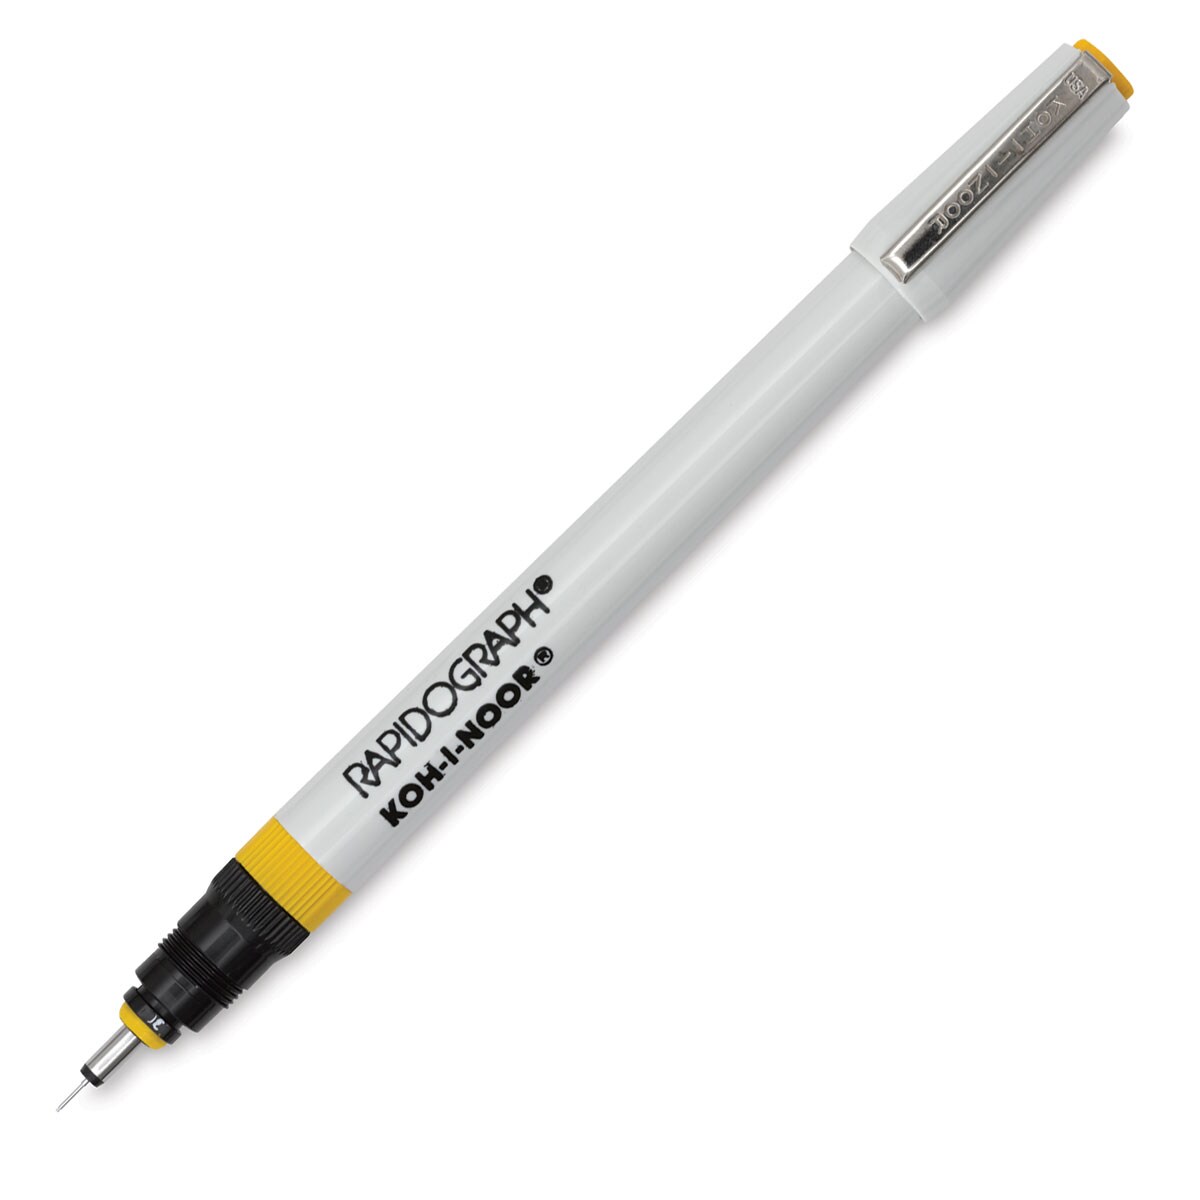 Koh-I-Noor Rapidograph Pen - 2x0, 0.30 mm Tip